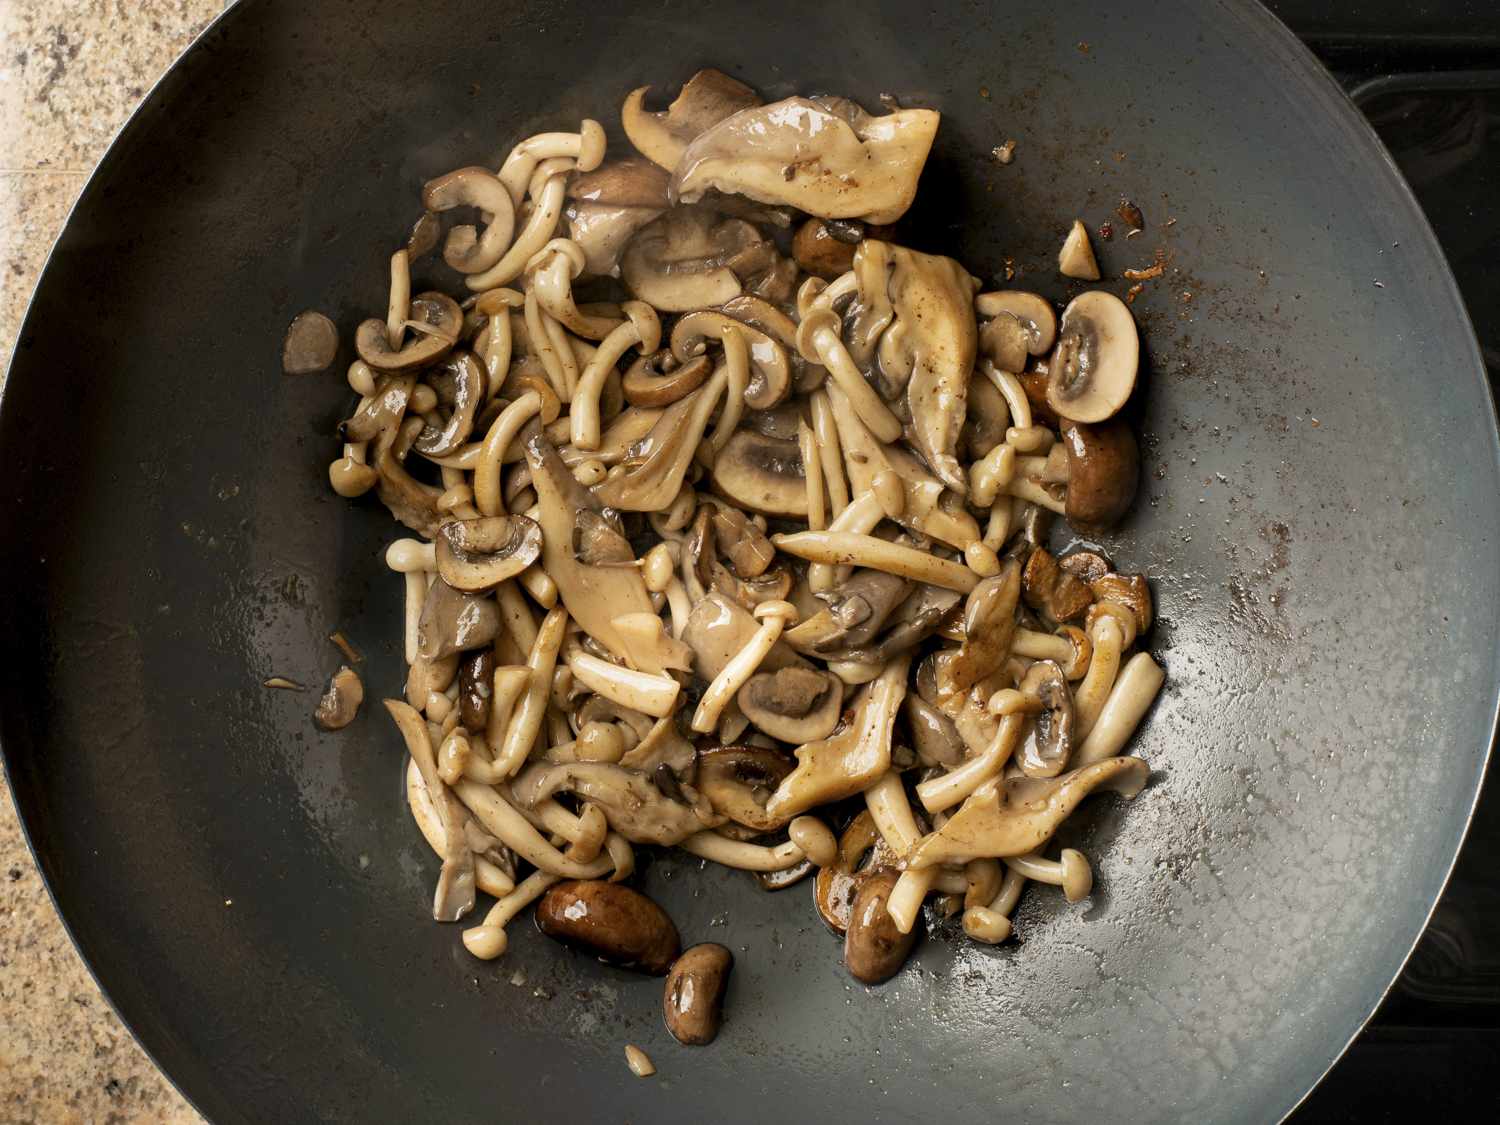 蘑菇汁蒸发后放入锅中烹煮。